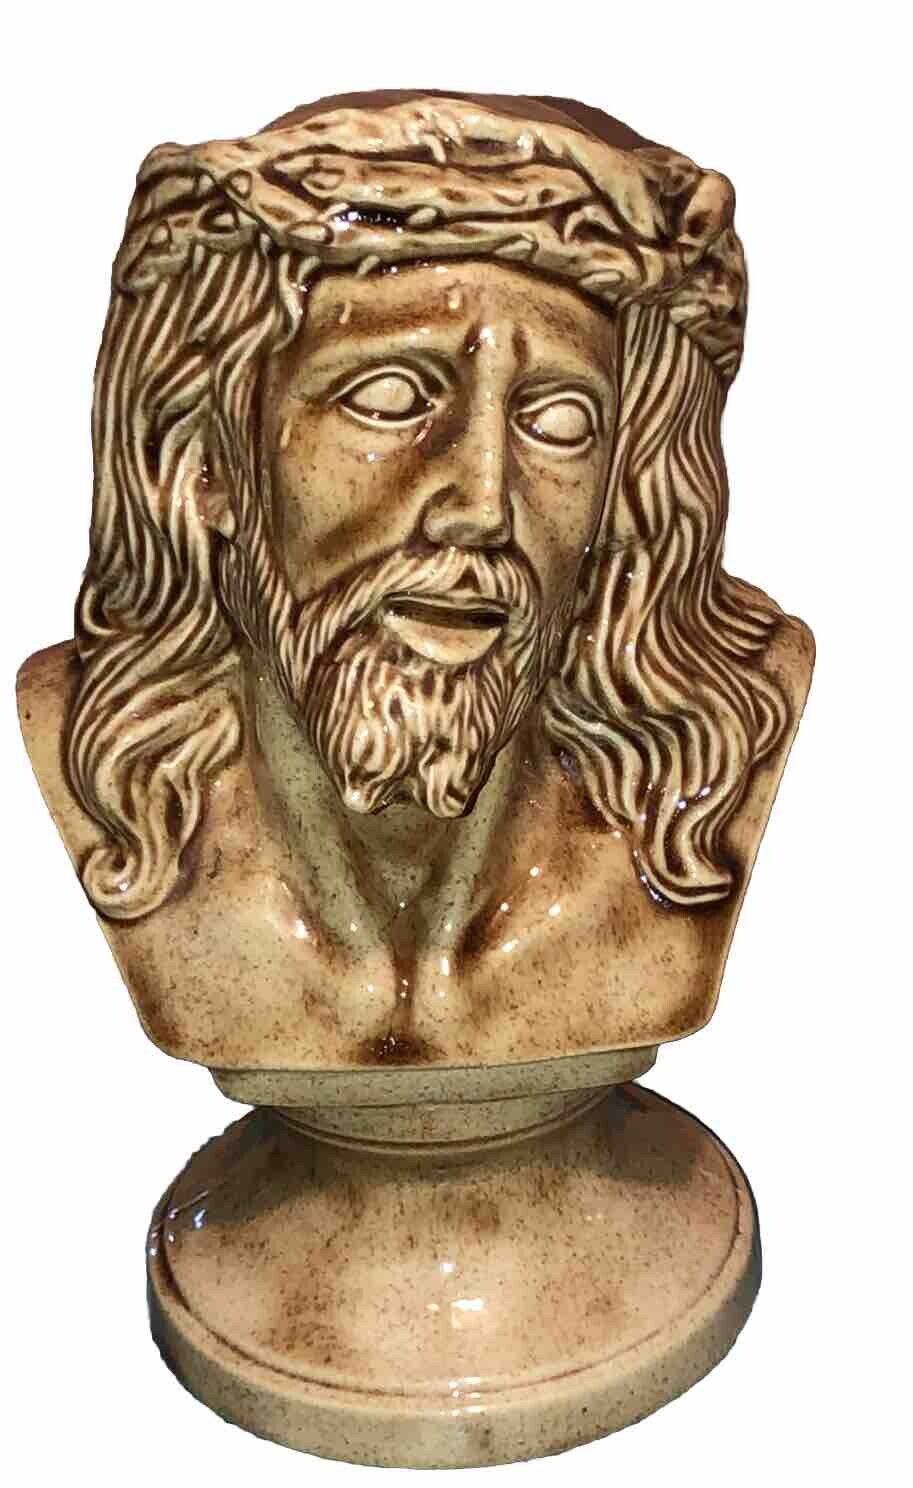 Vintage 9 Inch Tall Jesus Christ Bust Sculpture Figurine ￼ Hobbyist ￼ Fun